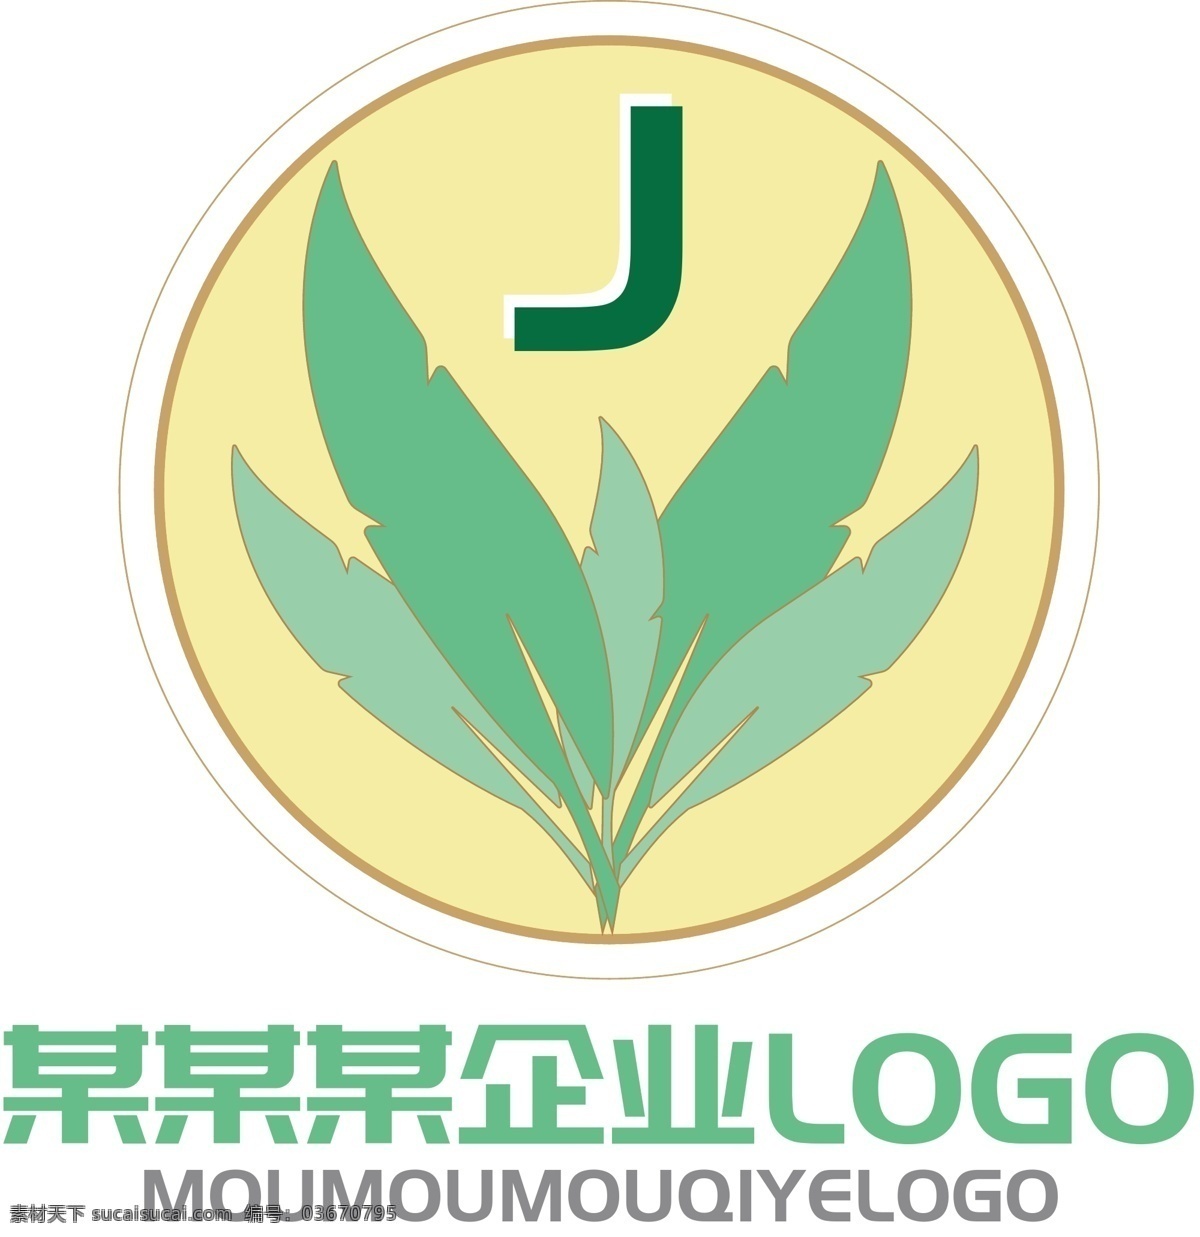 原创 黄绿色 清新 企业 logo 原创logo 清新logo 简约logo j字logo 叶子logo 叶子元素 企业元素